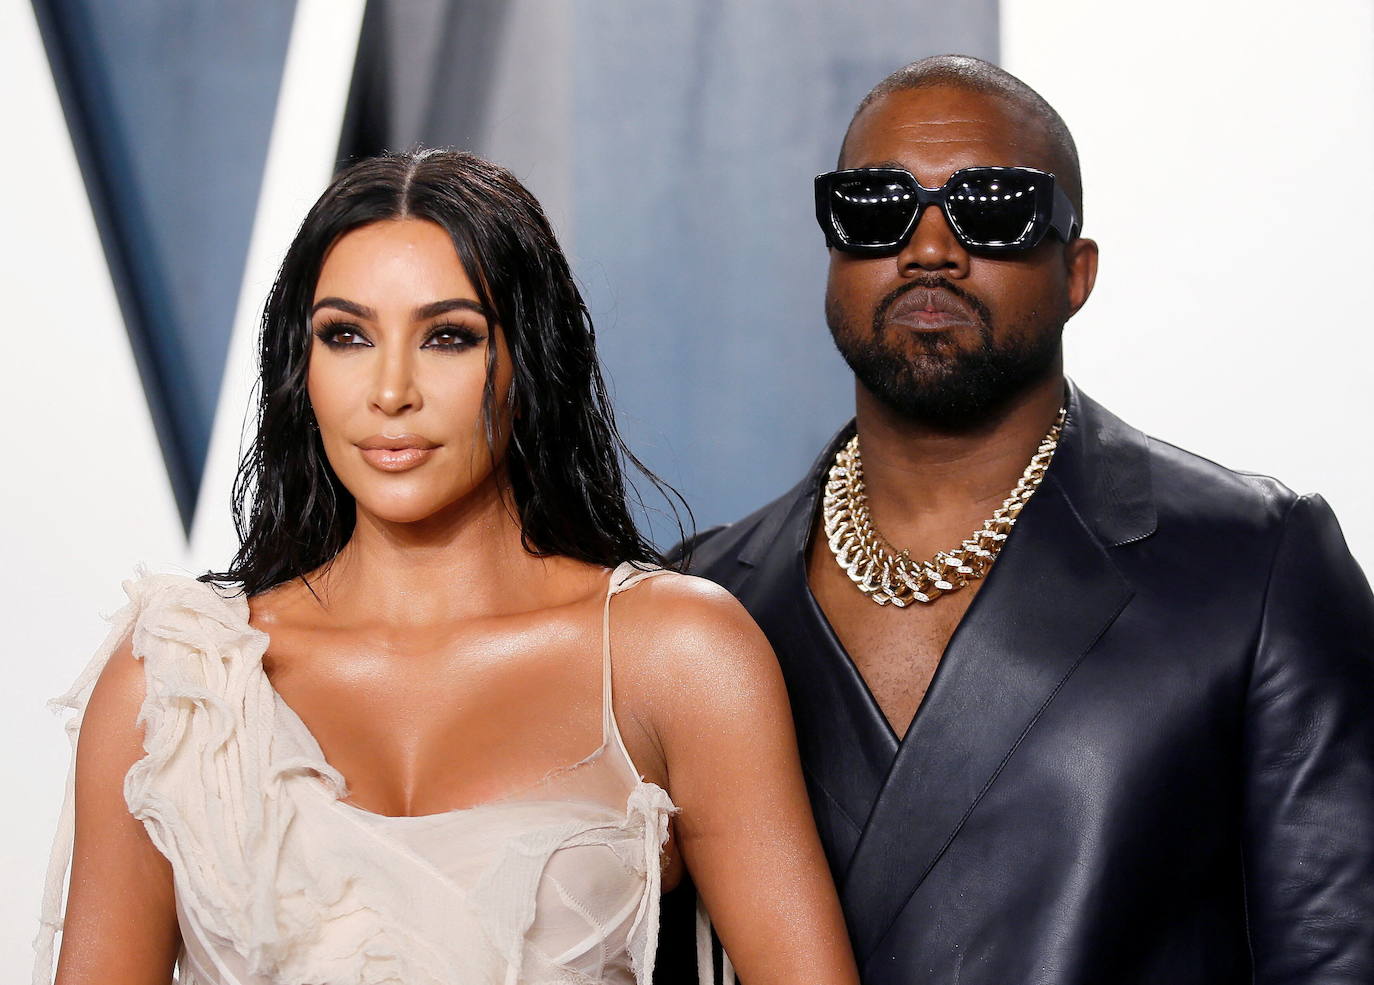 Les controverses ne peuvent pas arrêter Kanye West : Ye revient au numéro 1